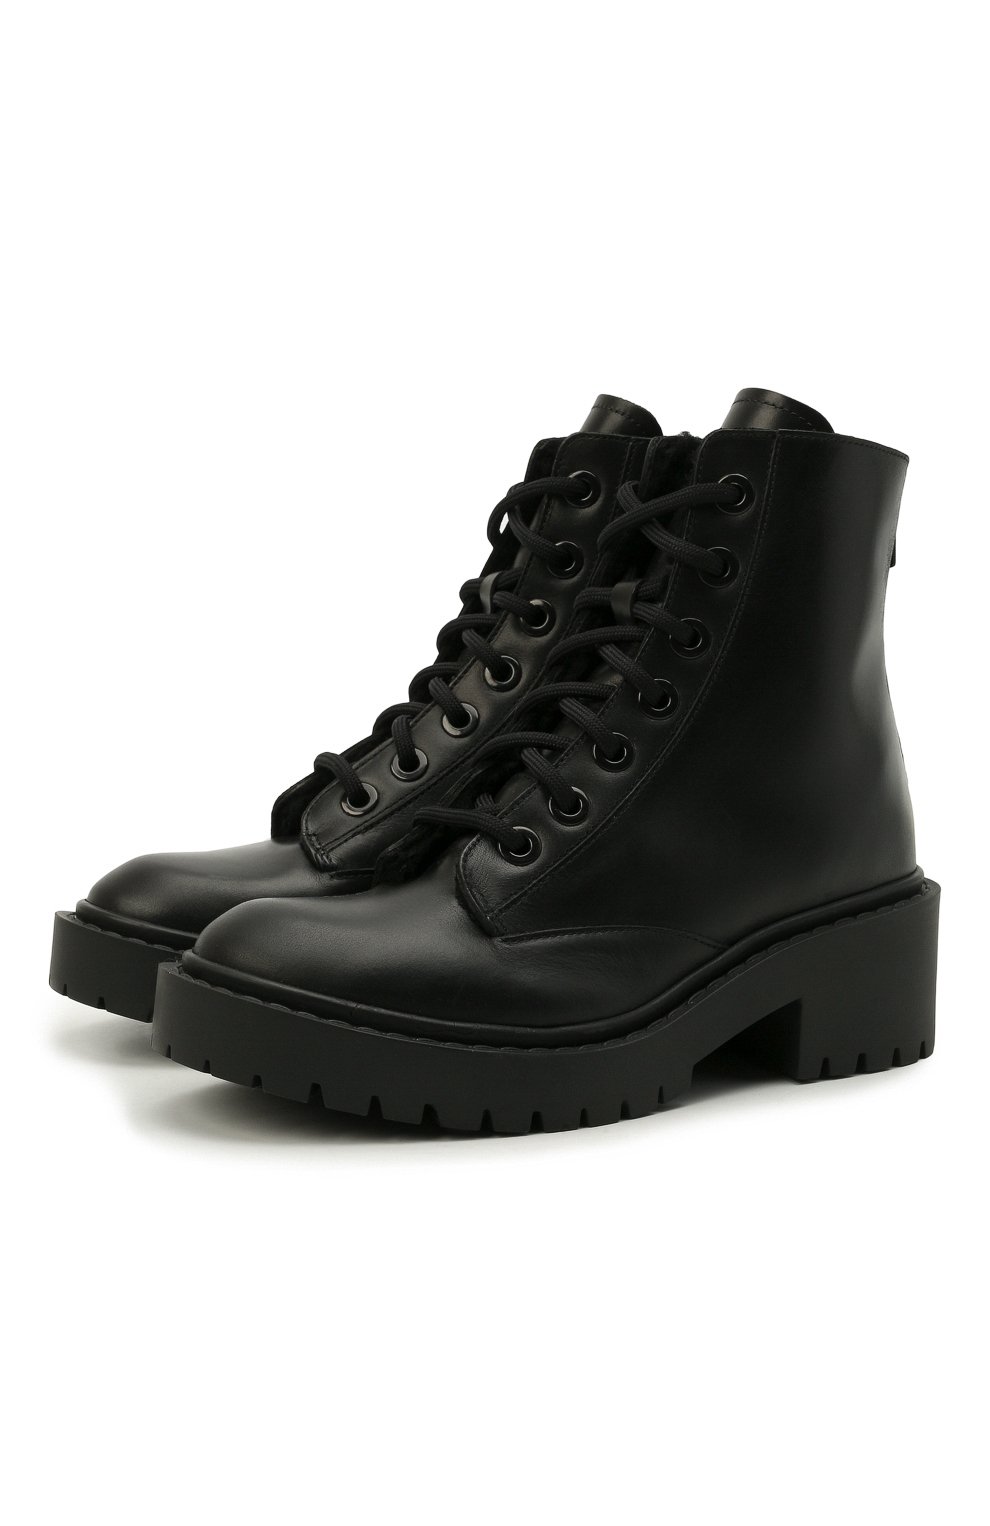 Кожаные ботинки Pike Kenzo FA62BT341L63, цвет чёрный, размер 37 - фото 1